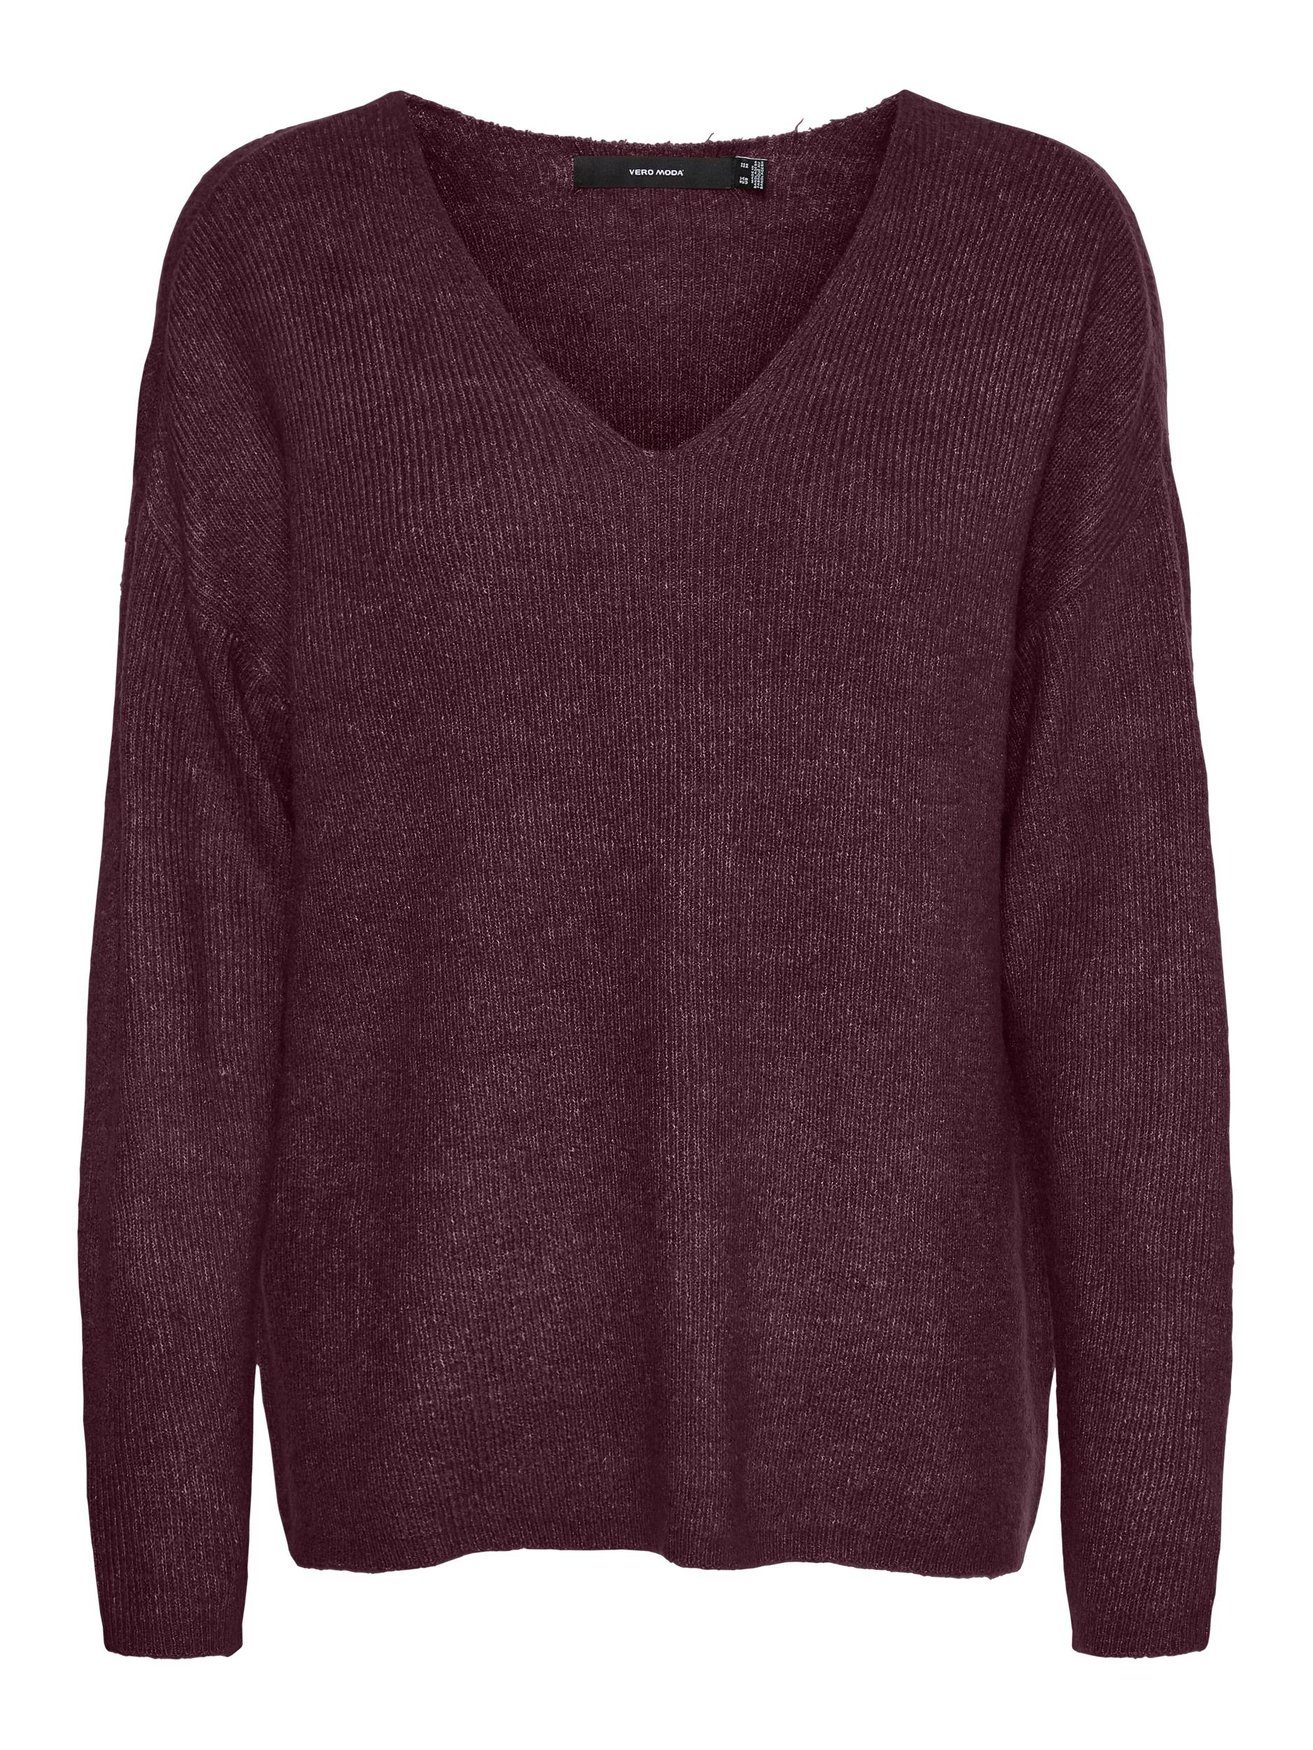 Sweater Moda Langarm Weinrot Strickpullover 6112 Strickpullover V-Ausschnitt in Vero VMCREWLEFILE